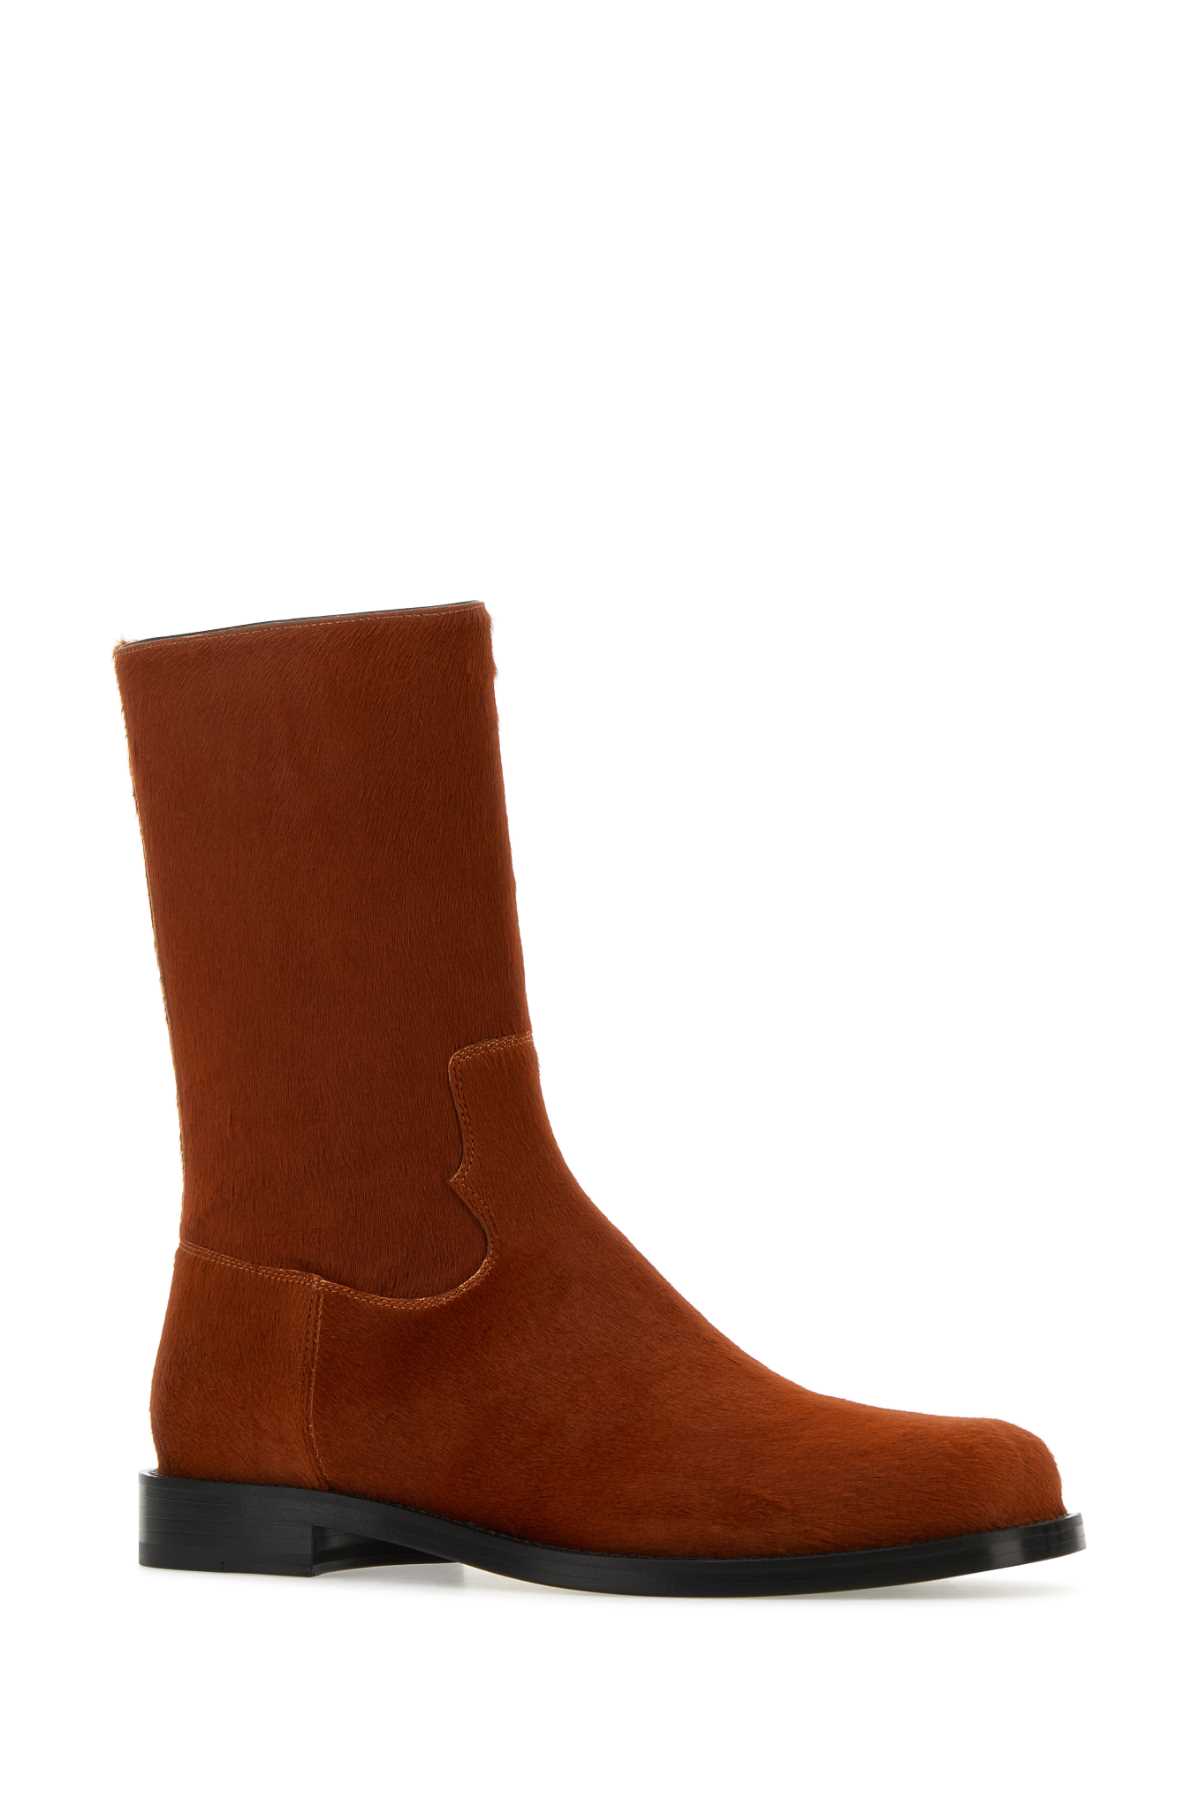 Dries Van Noten Brick Calfhair Ankle Boots In Tan